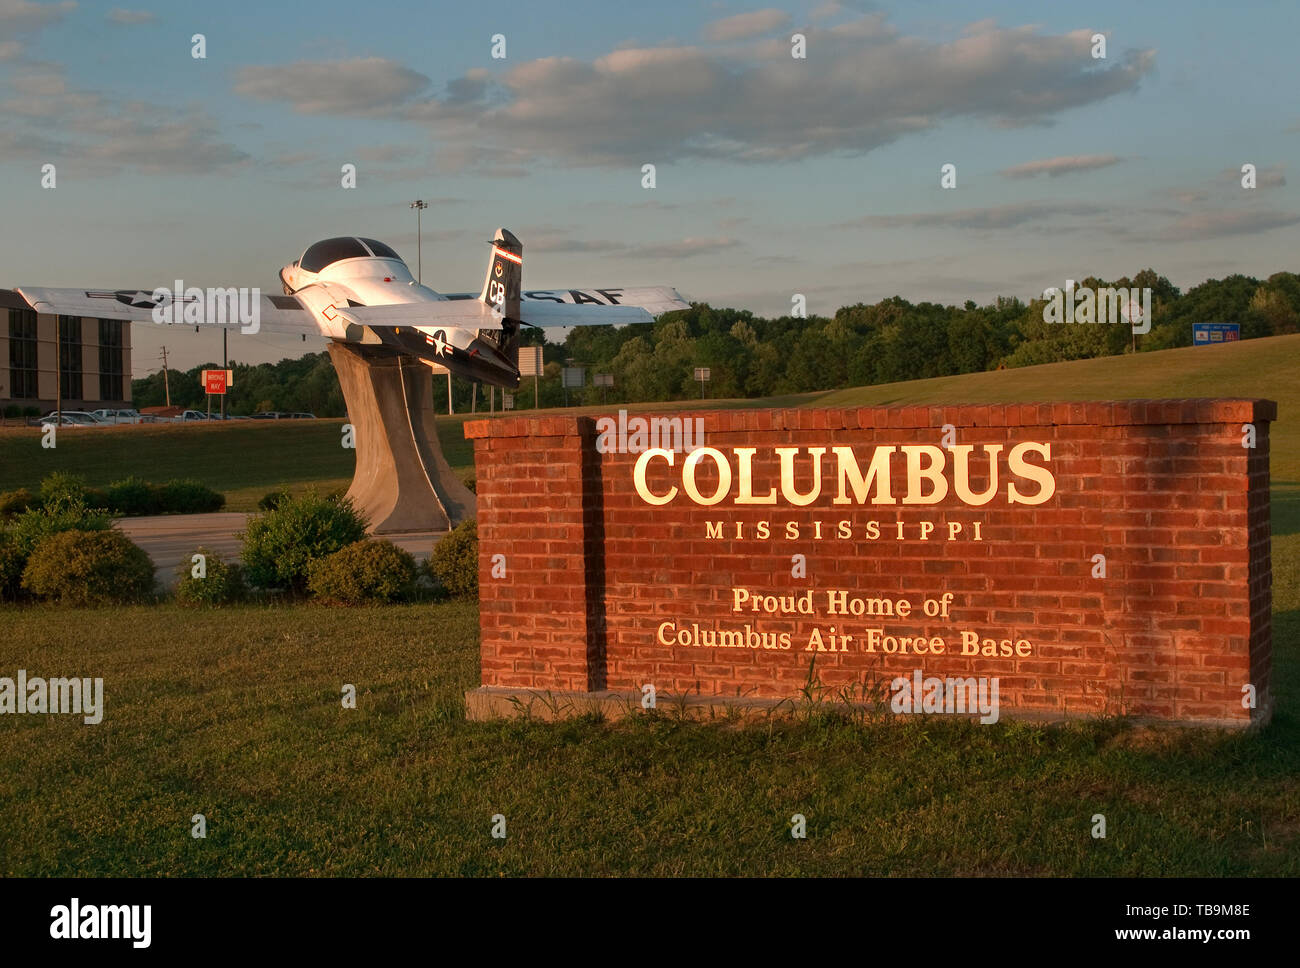 Eine Cessna T-37 Tweet ist Teil der Static Display in der Innenstadt von Columbus, Mississippi. Die T-37 diente als Trainer Ebene für die US Air Force Kadetten. Stockfoto